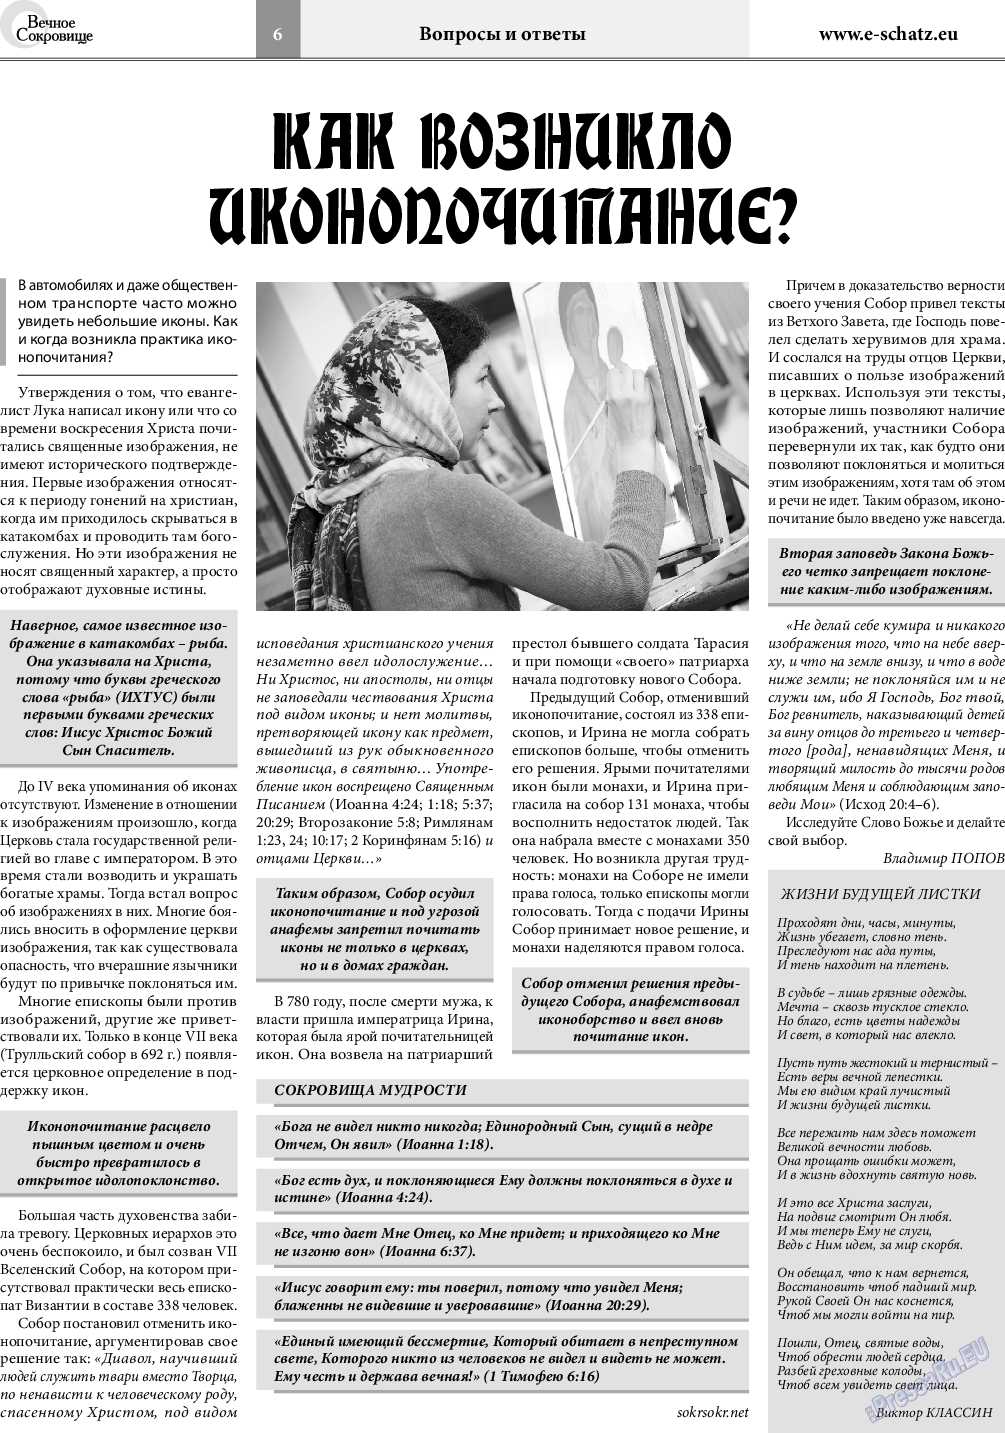 Вечное сокровище, газета. 2019 №1 стр.6